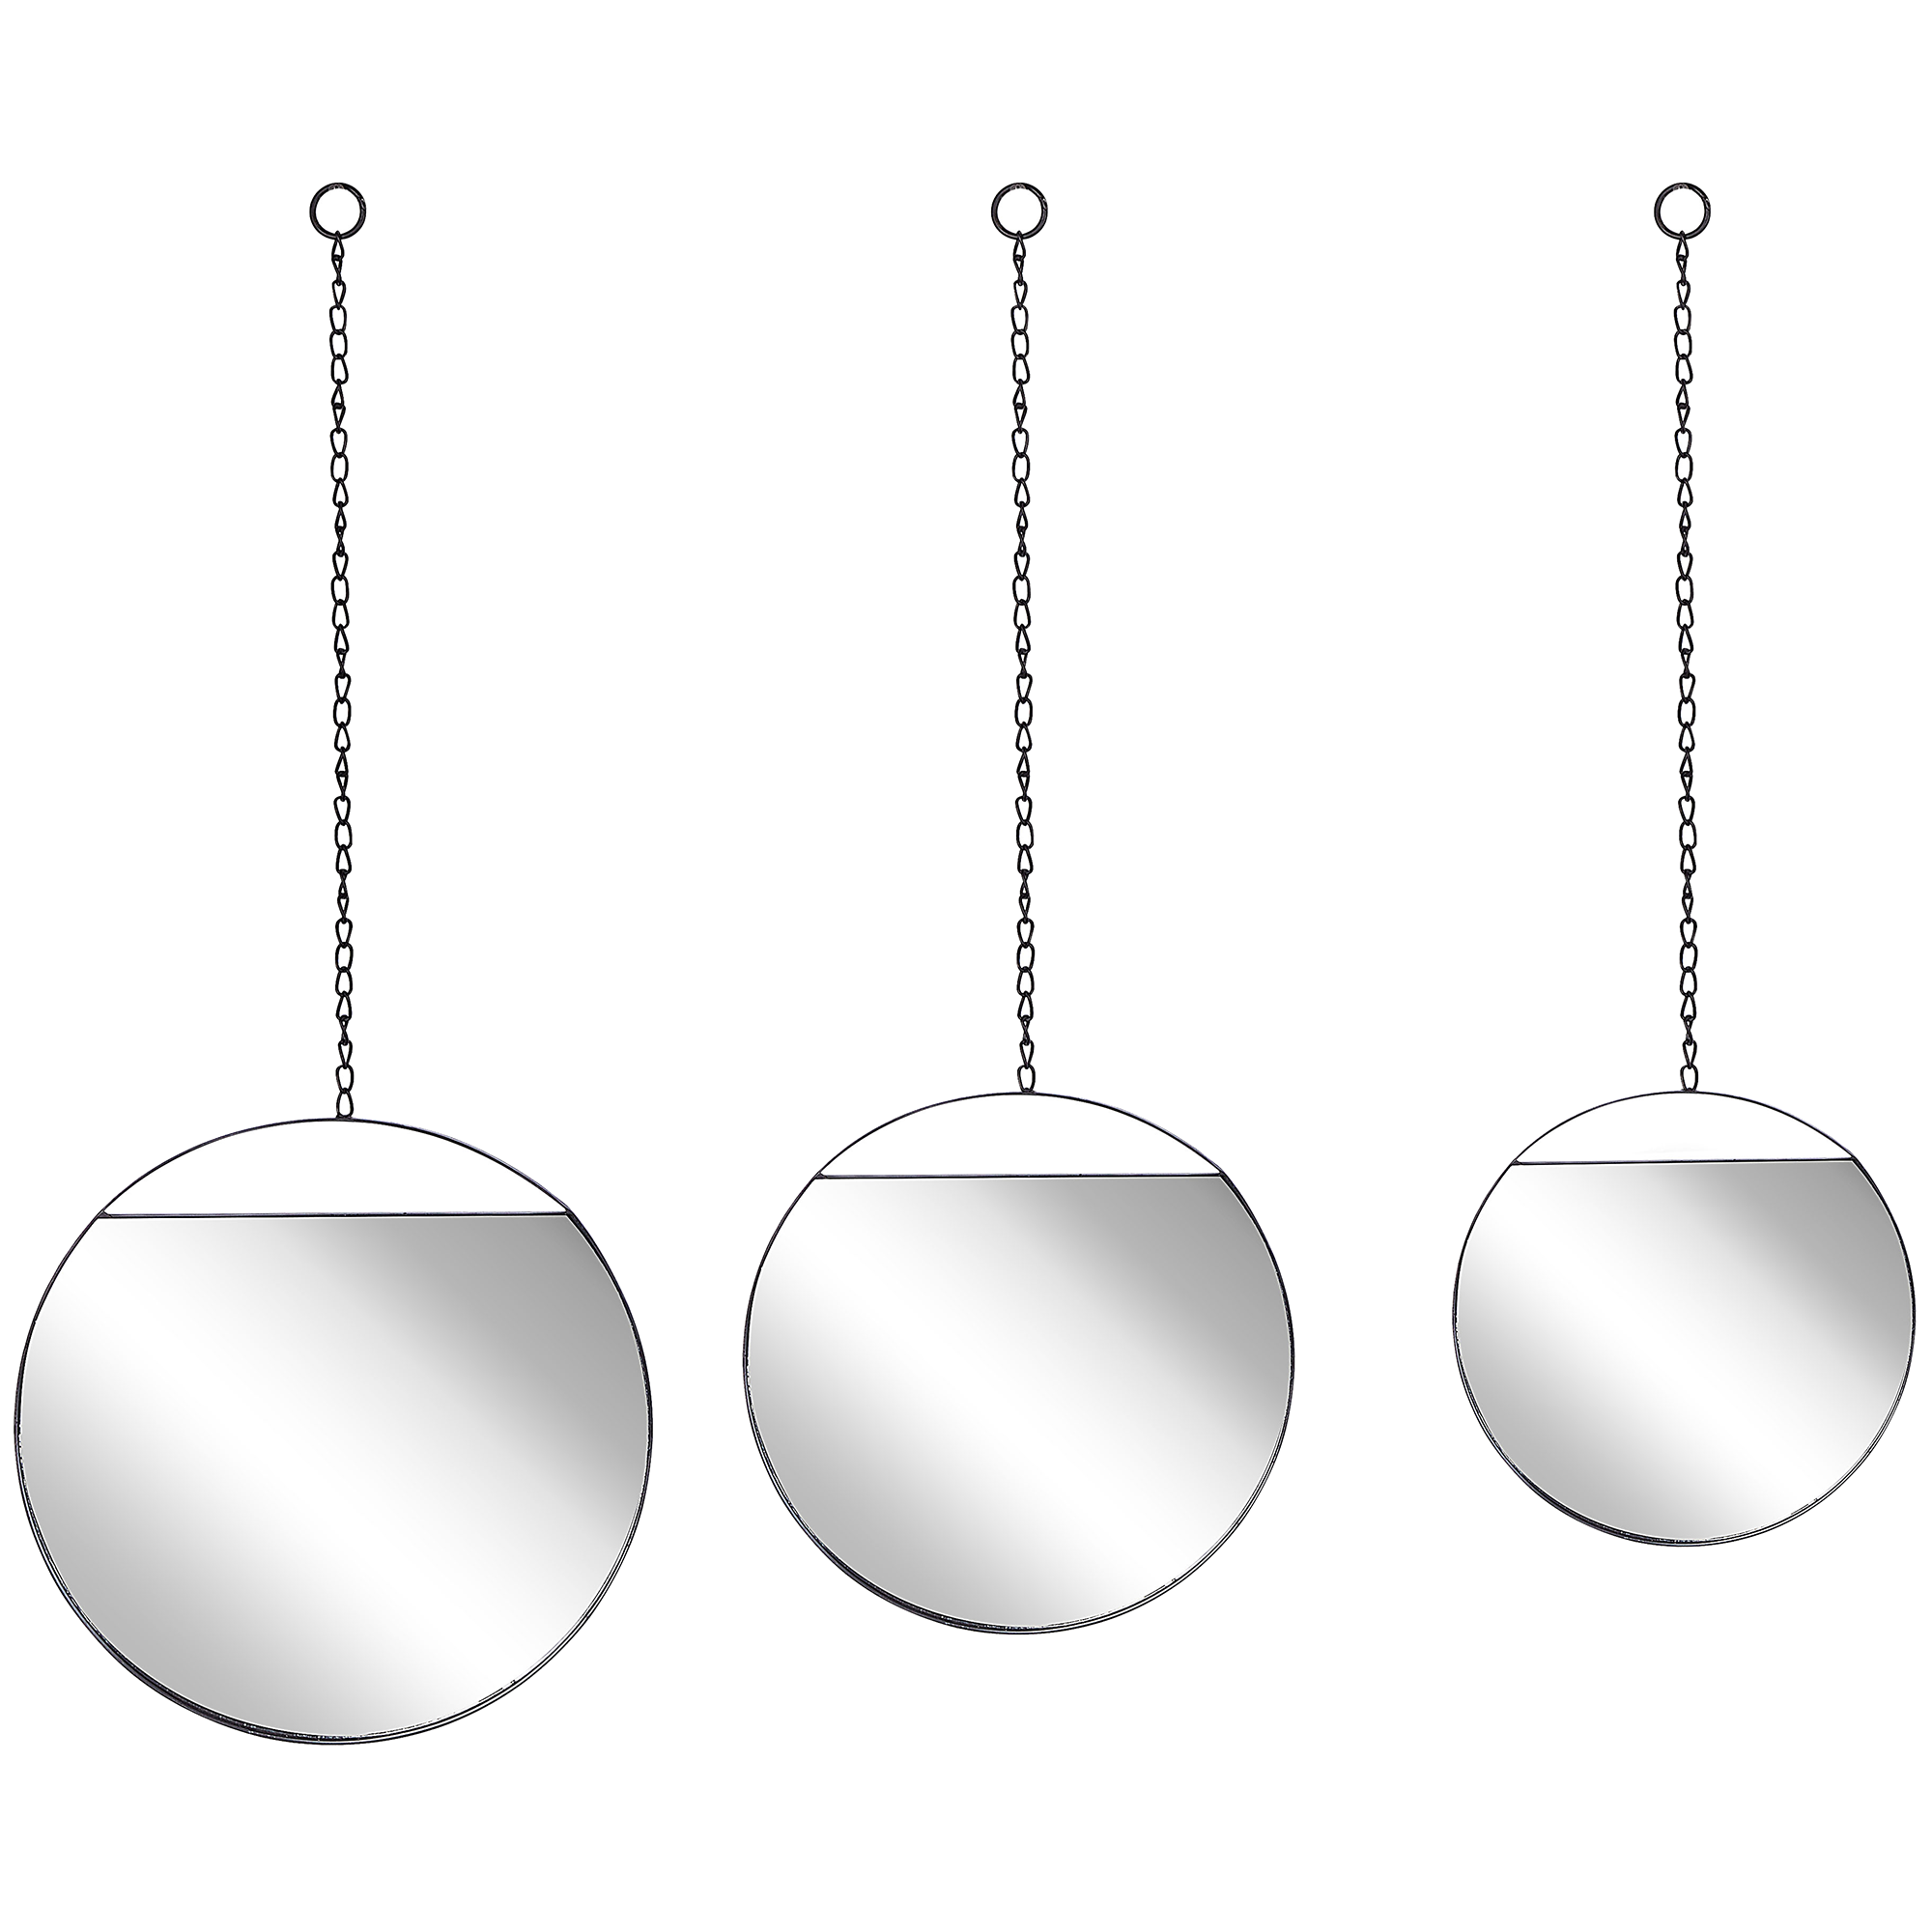 DekoArte - Espejos Decorativos Modernos De Pared, Espejos Sofisticados  Grandes Circulos Color Blanco, 1 Pieza 140x70cm